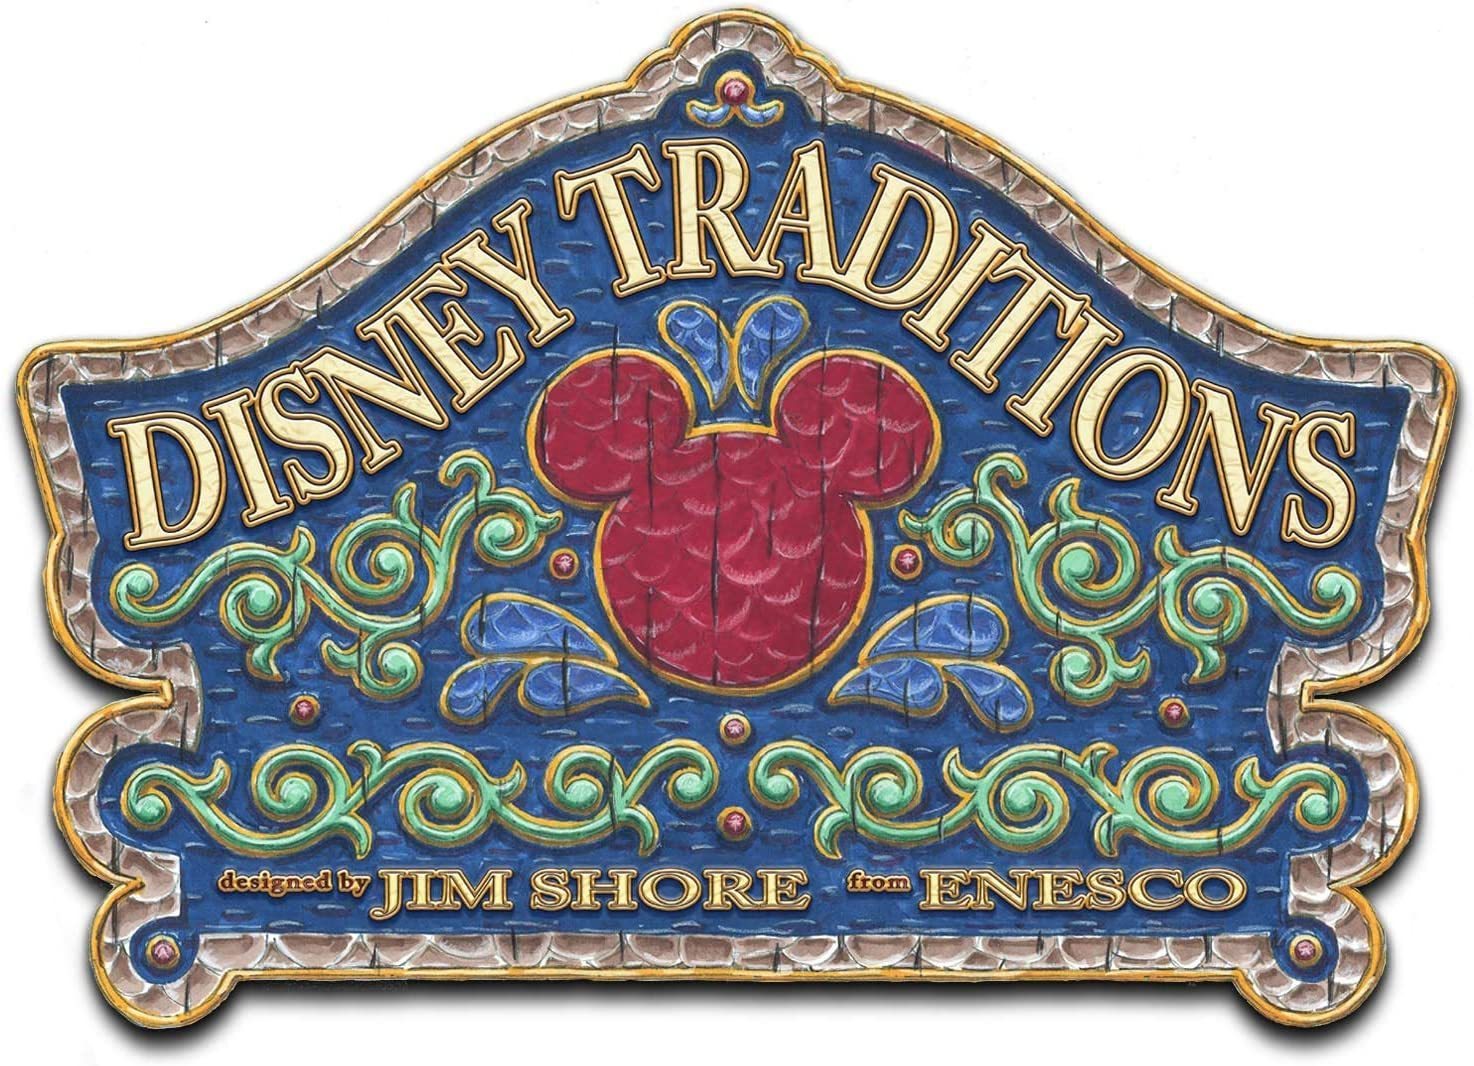 Disney Traditions 7 Dwarfs "Homeward Bound"